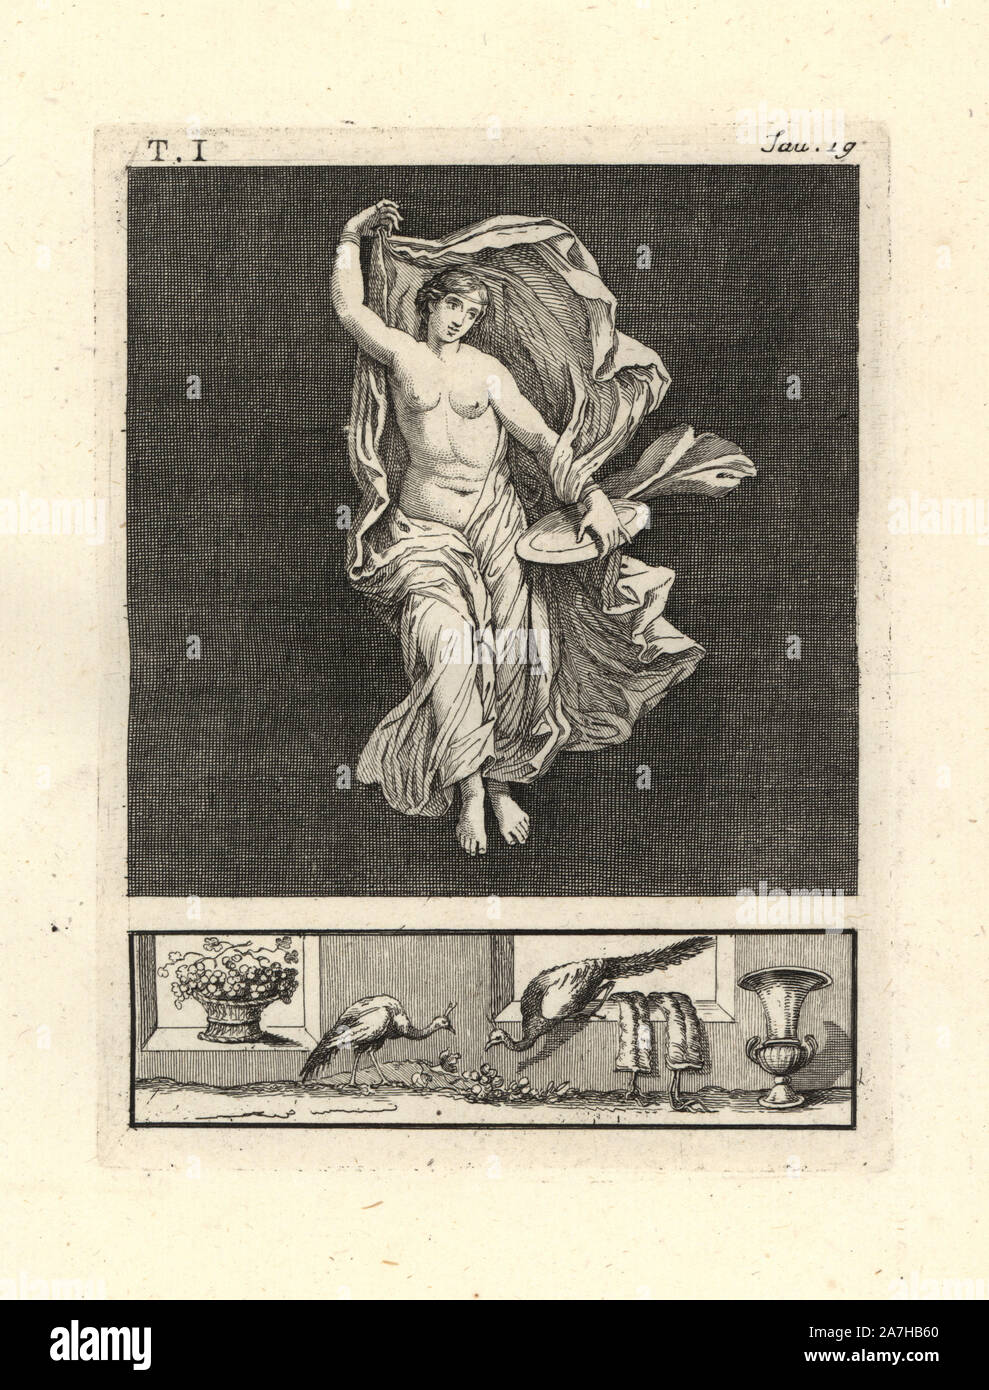 Die Malerei von Wand von einem Raum entfernt, vielleicht ein TRICLINIUM oder im Speisesaal, in einem Haus in Pompeji im Jahre 1749. Es zeigt Venus, oder Tänzer oder bacchant, Ihr, Tanzen anmutig mit einer Festplatte von Gold und Blau durchscheinenden Schleier. Kupferstich von Tommaso Piroli aus seiner eigenen'Antichita di Ercolano" (altertümer von Herculaneum), Rom, 1789 eingraviert. Italienischen Maler und Kupferstecher Piroli (1752-1824) veröffentlicht sechs Bände zwischen 1789 und 1807 dokumentieren die Wandmalereien und Bronzen in Heraculaneum und Pompeji gefunden. Stockfoto